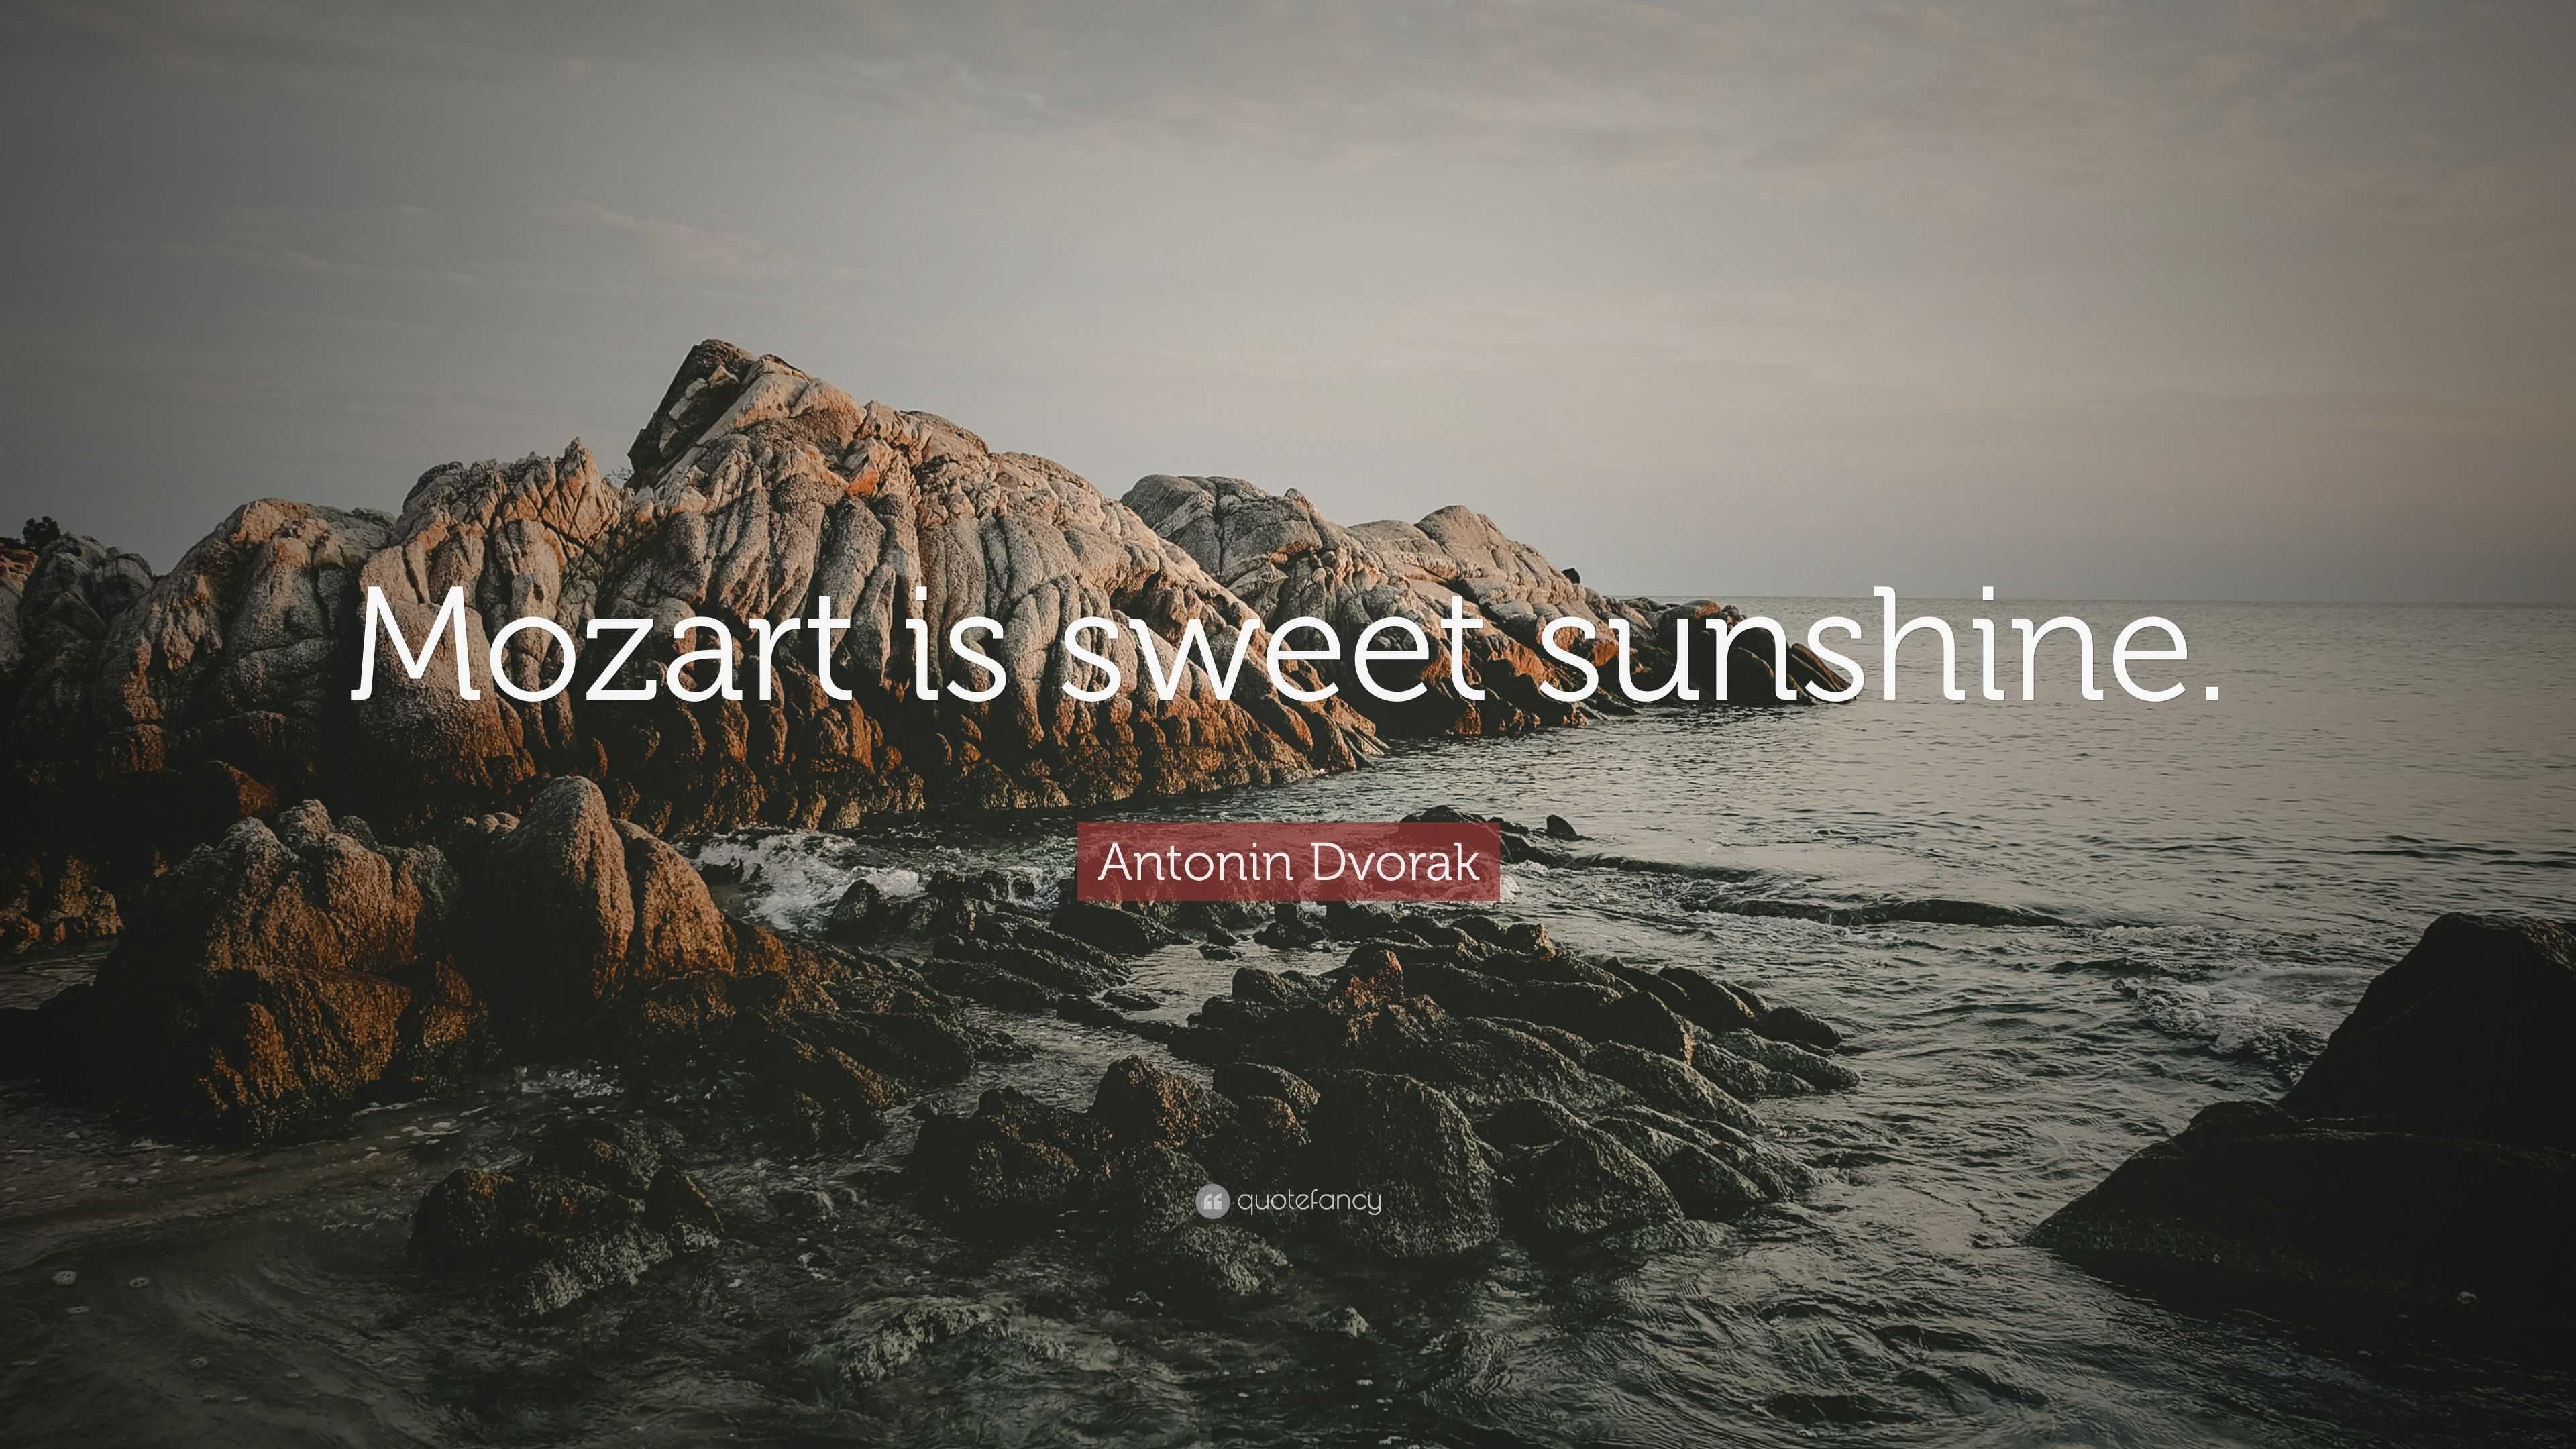 Antonin Dvorak Quote: “Mozart is sweet sunshine.”